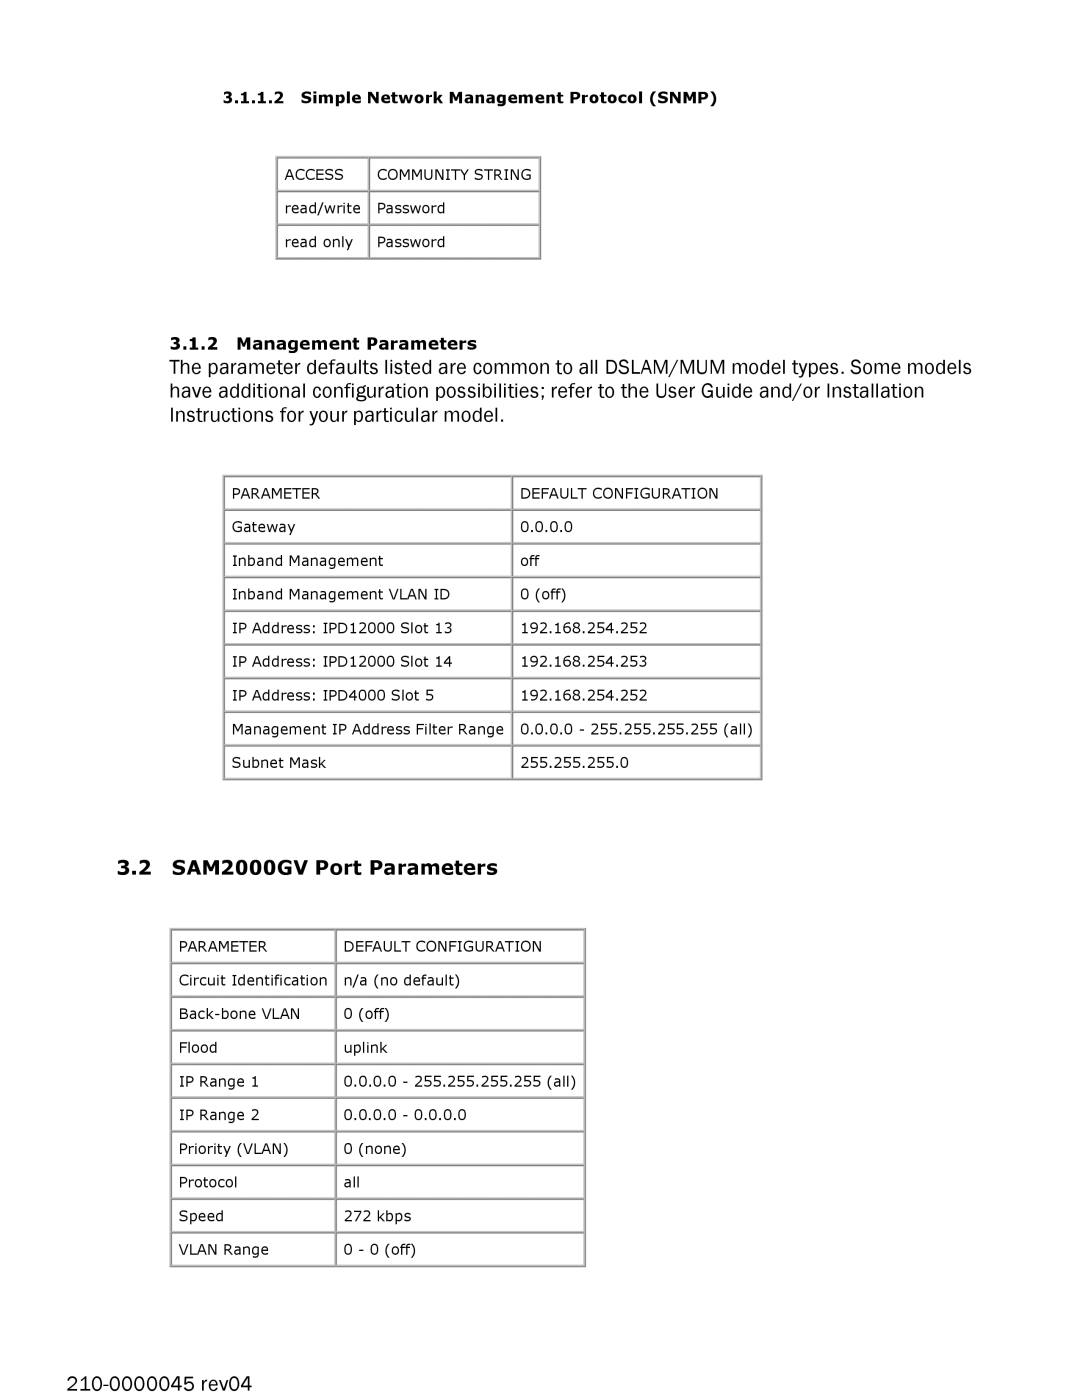 Paradyne SAM2000V-12 manual 3.2 SAM2000GV Port Parameters, Management Parameters, Simple Network Management Protocol SNMP 